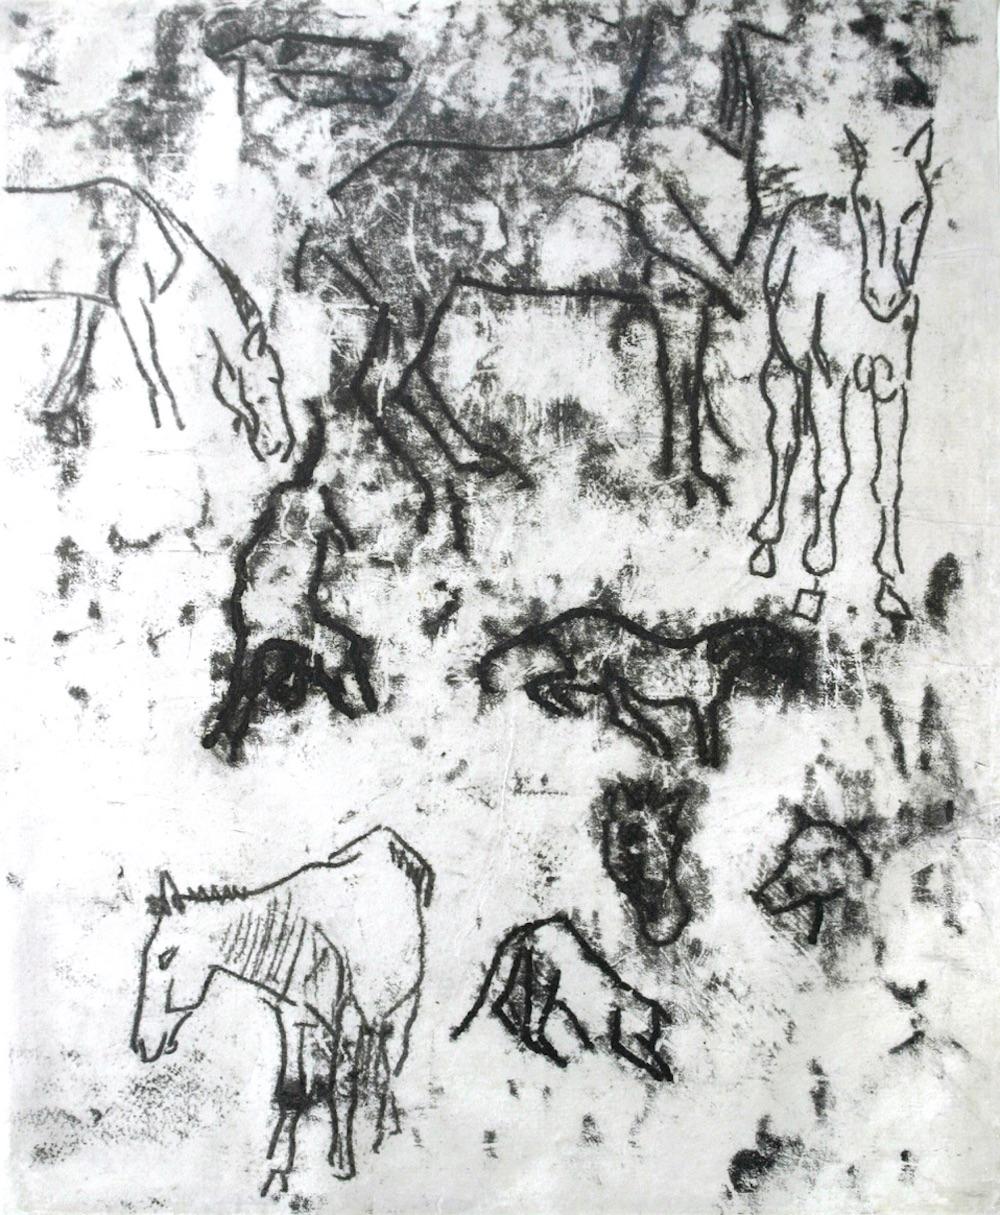 Études de chevaux est un monotype original (monotype tracé, imprimé en noir chaud fin) réalisé par Paul Gauguin en 1901-1902.

Dans le catalogue général des monotypes de Gauguin, Field écrit que dans Études de chevaux, les allusions à des toiles